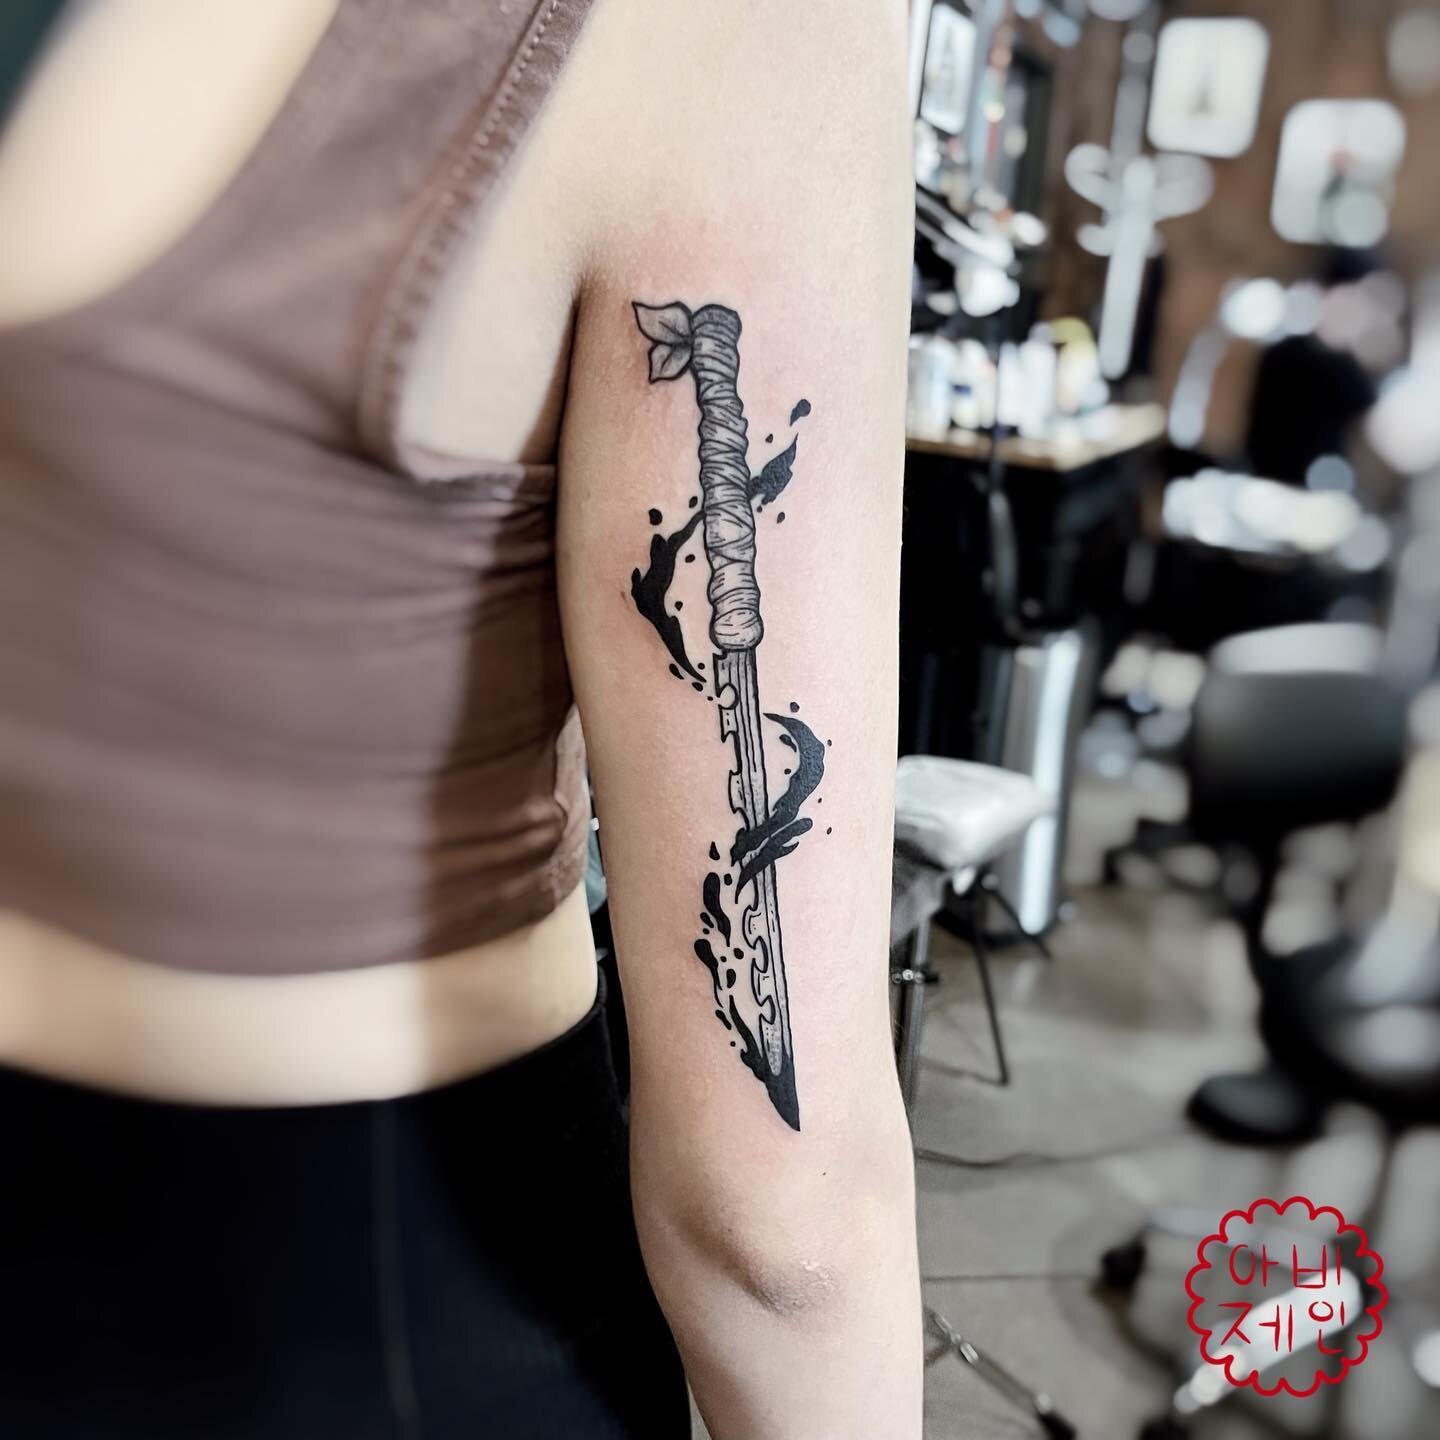 Thank you&hellip;.🐗

#tattoo #flashtattoo #flashtat #ink #inked #tattoodrawing #drawing #linework #lineworktattoo #tattooartist #artist #tattooart #art #tattooing #minneapolis #minneapolistattoo #minneapolistattooartist #minnesota #minnesotatattoo #